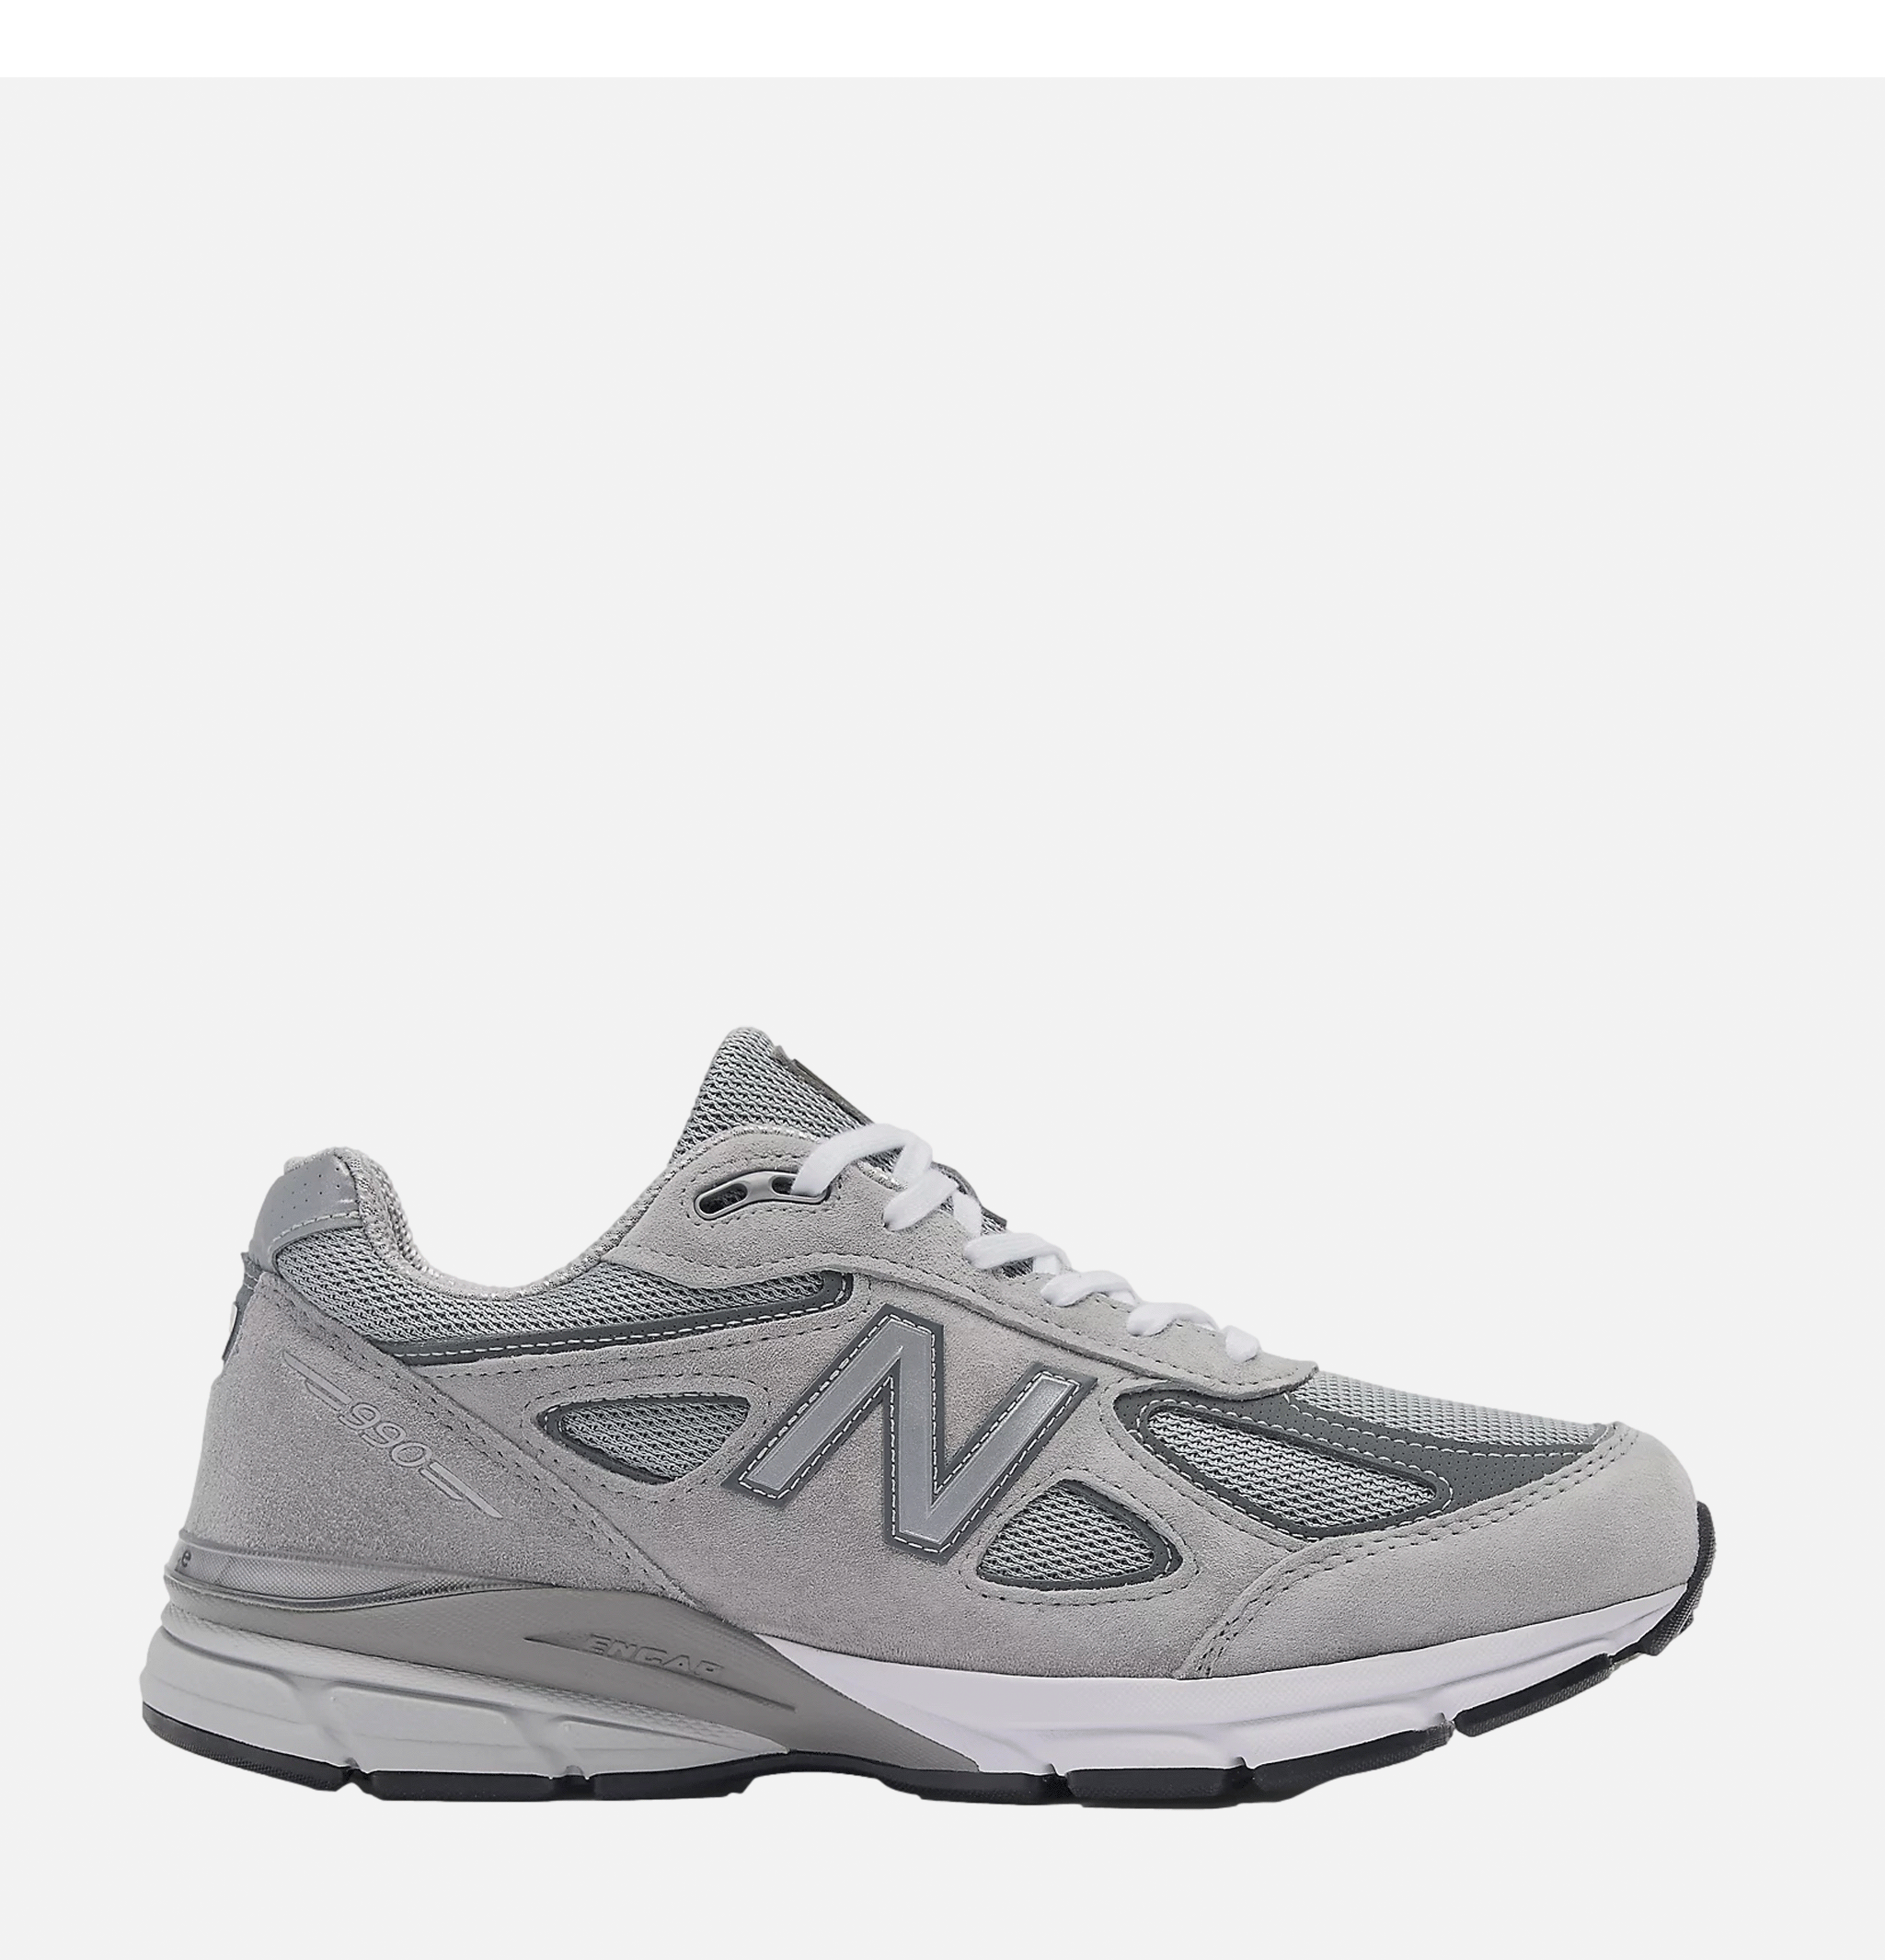 New Balance 990 V4 Grey